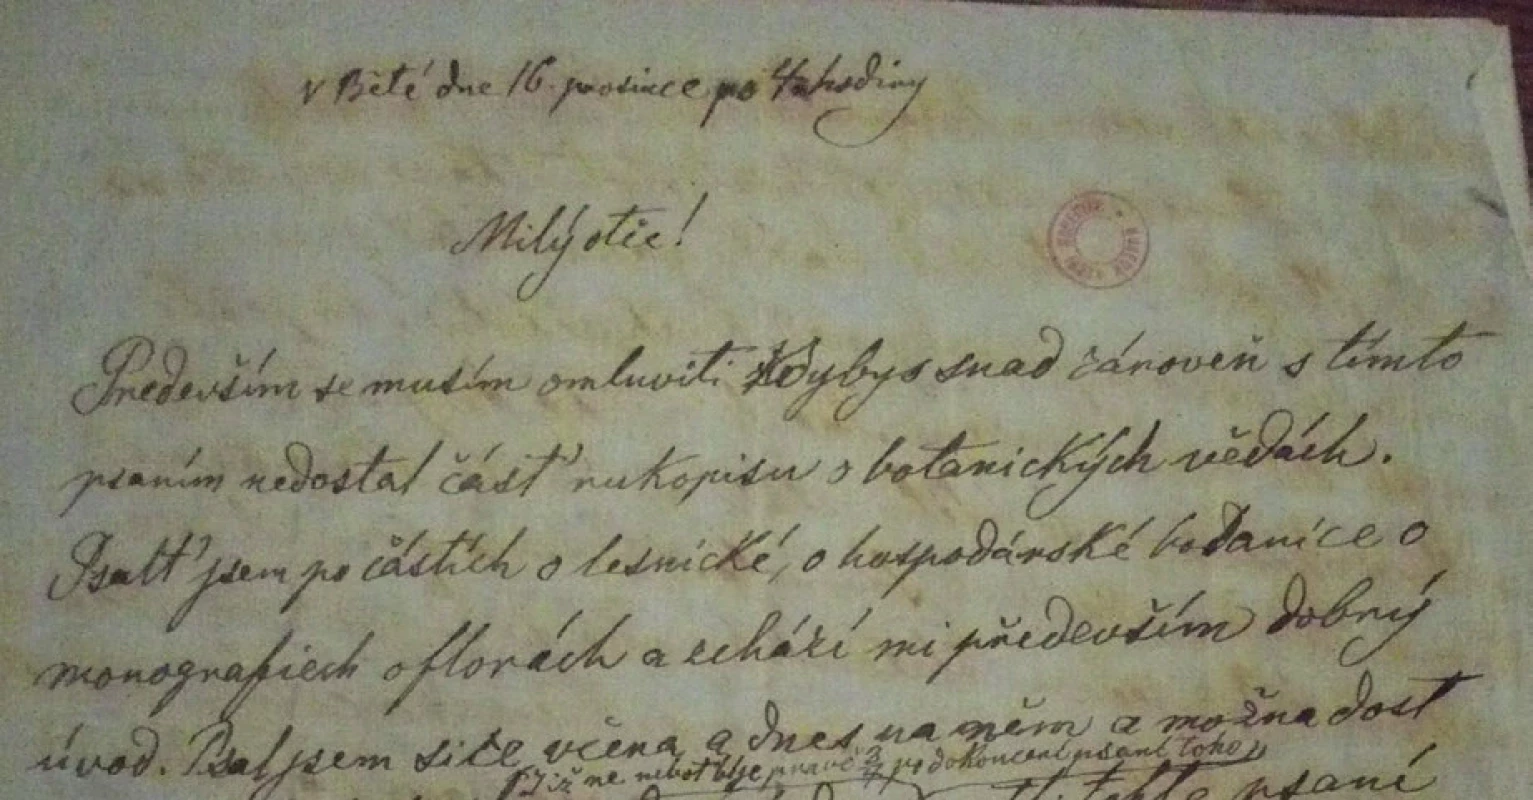 Úvod dopisu od Emanuela otci datovaném v Bělé
16. prosince